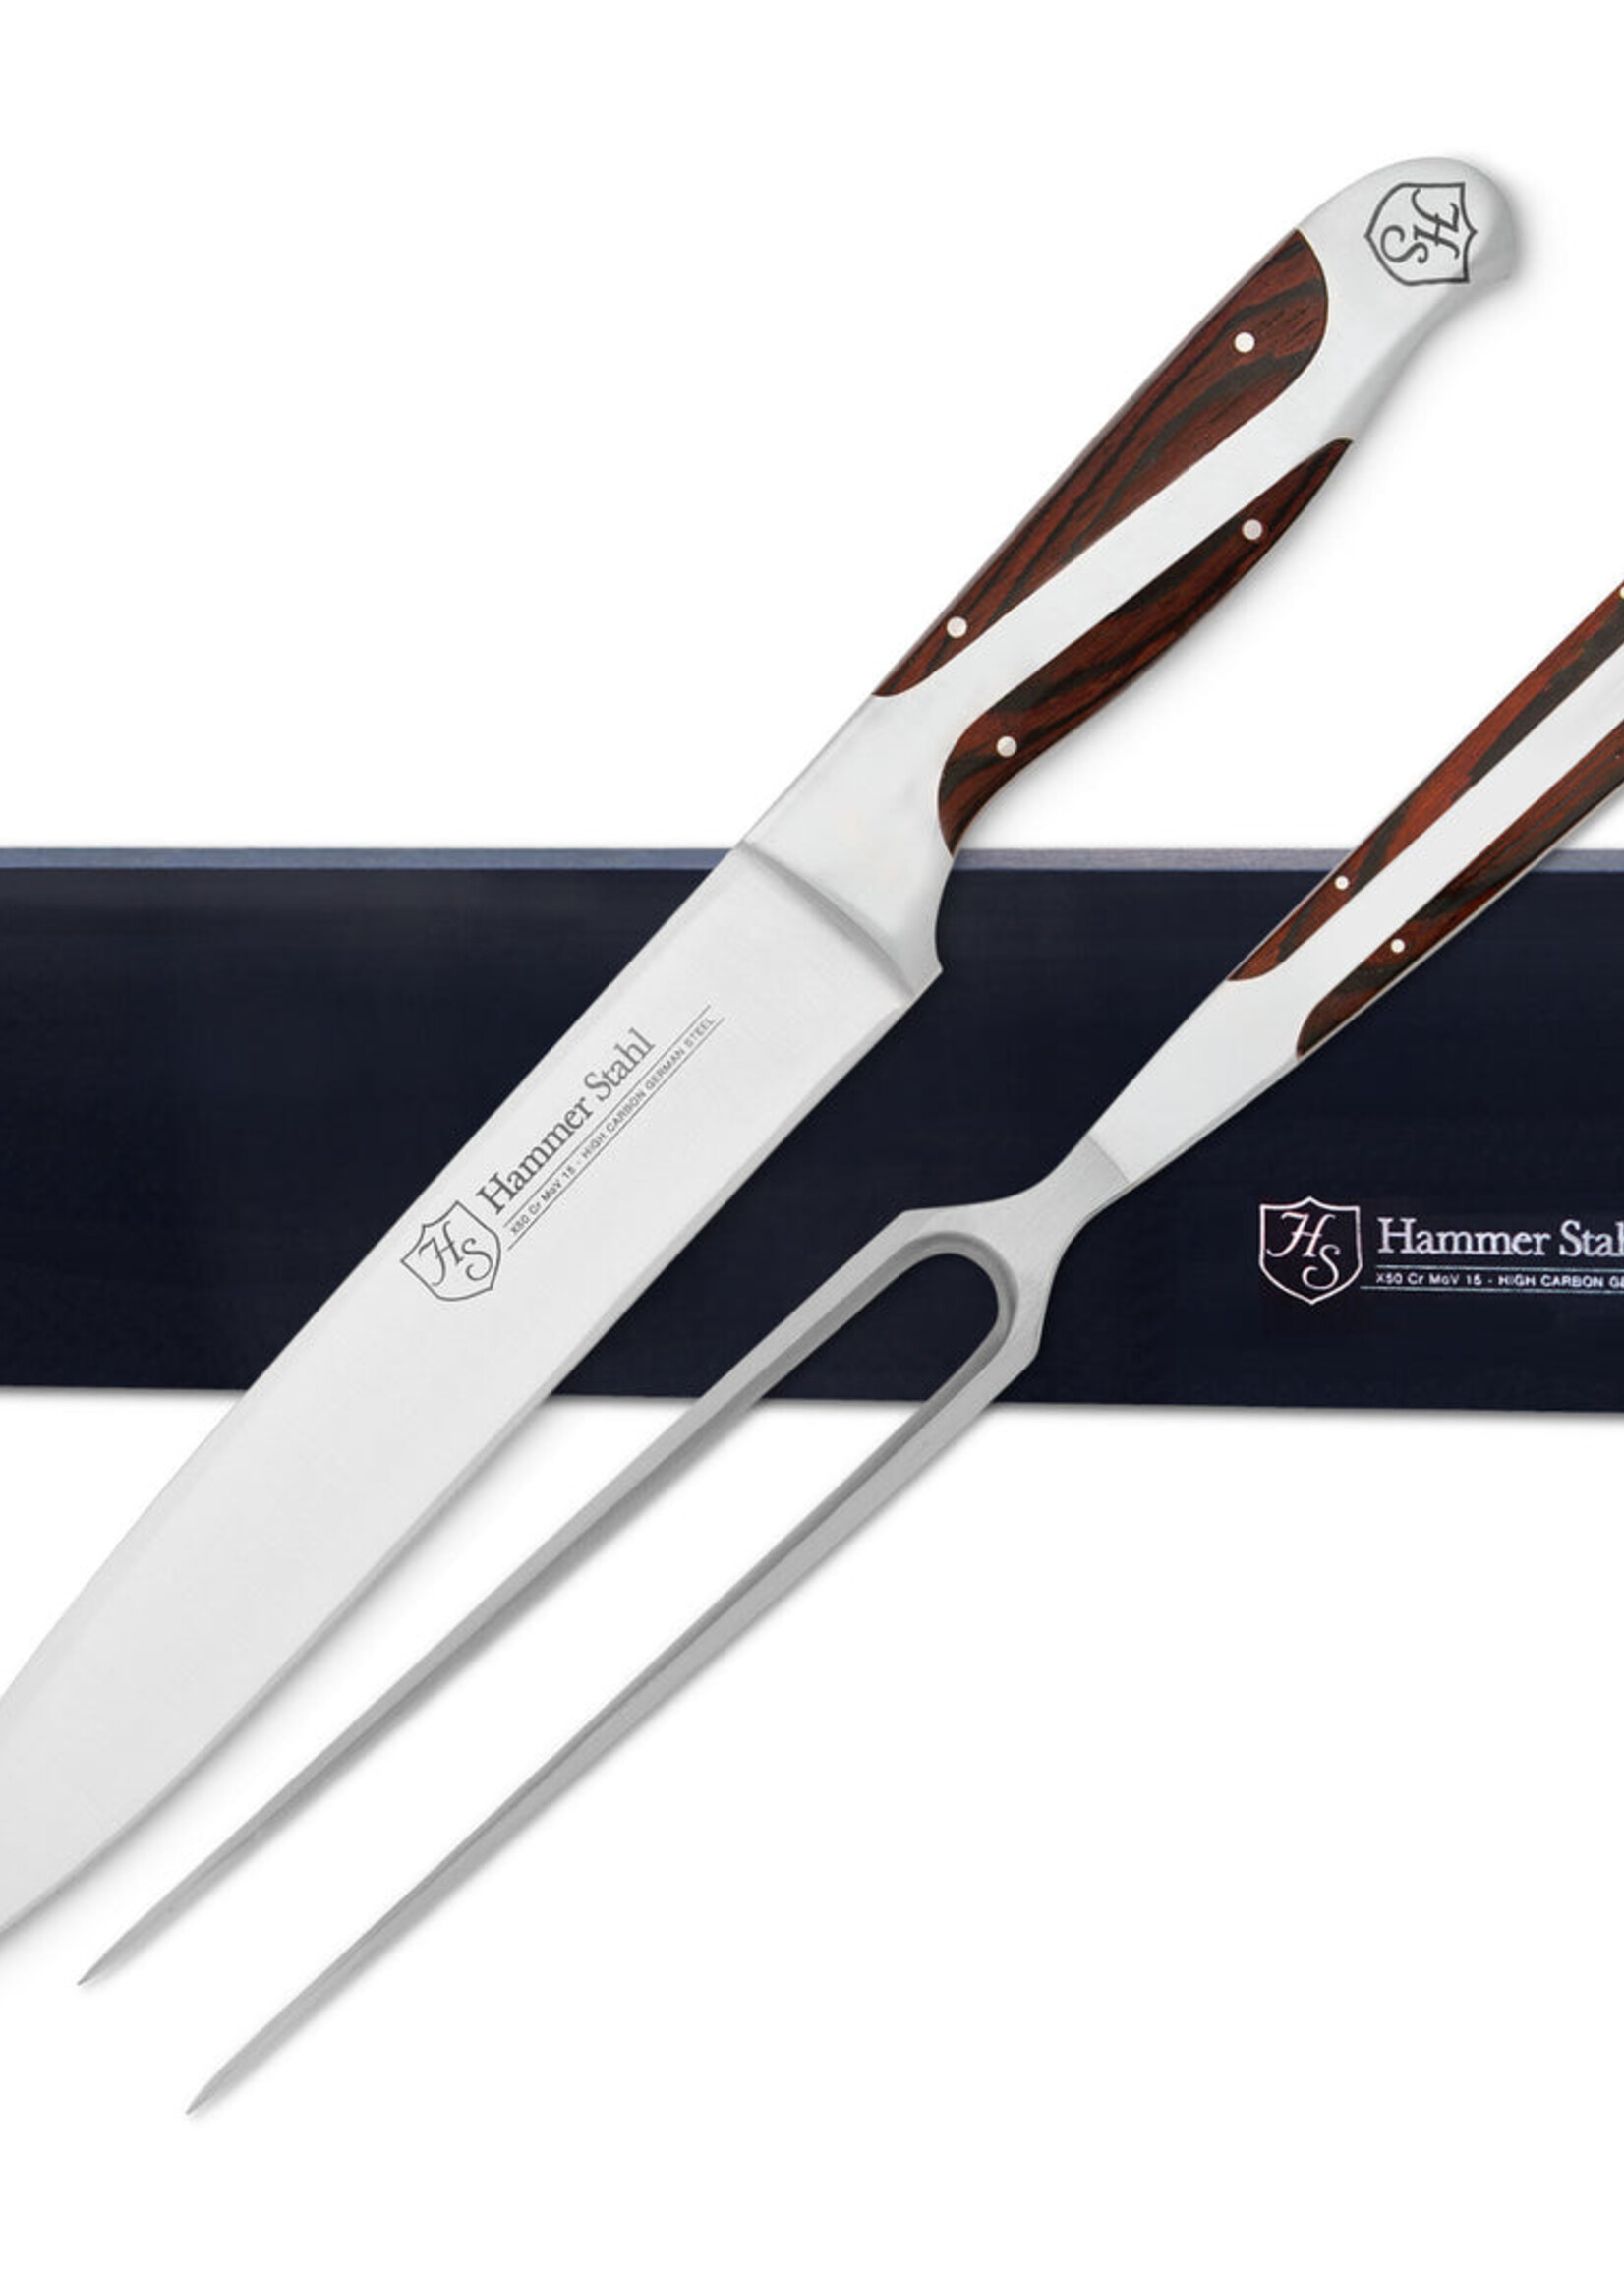 Heritage Steel Carving Knife & Fork Set